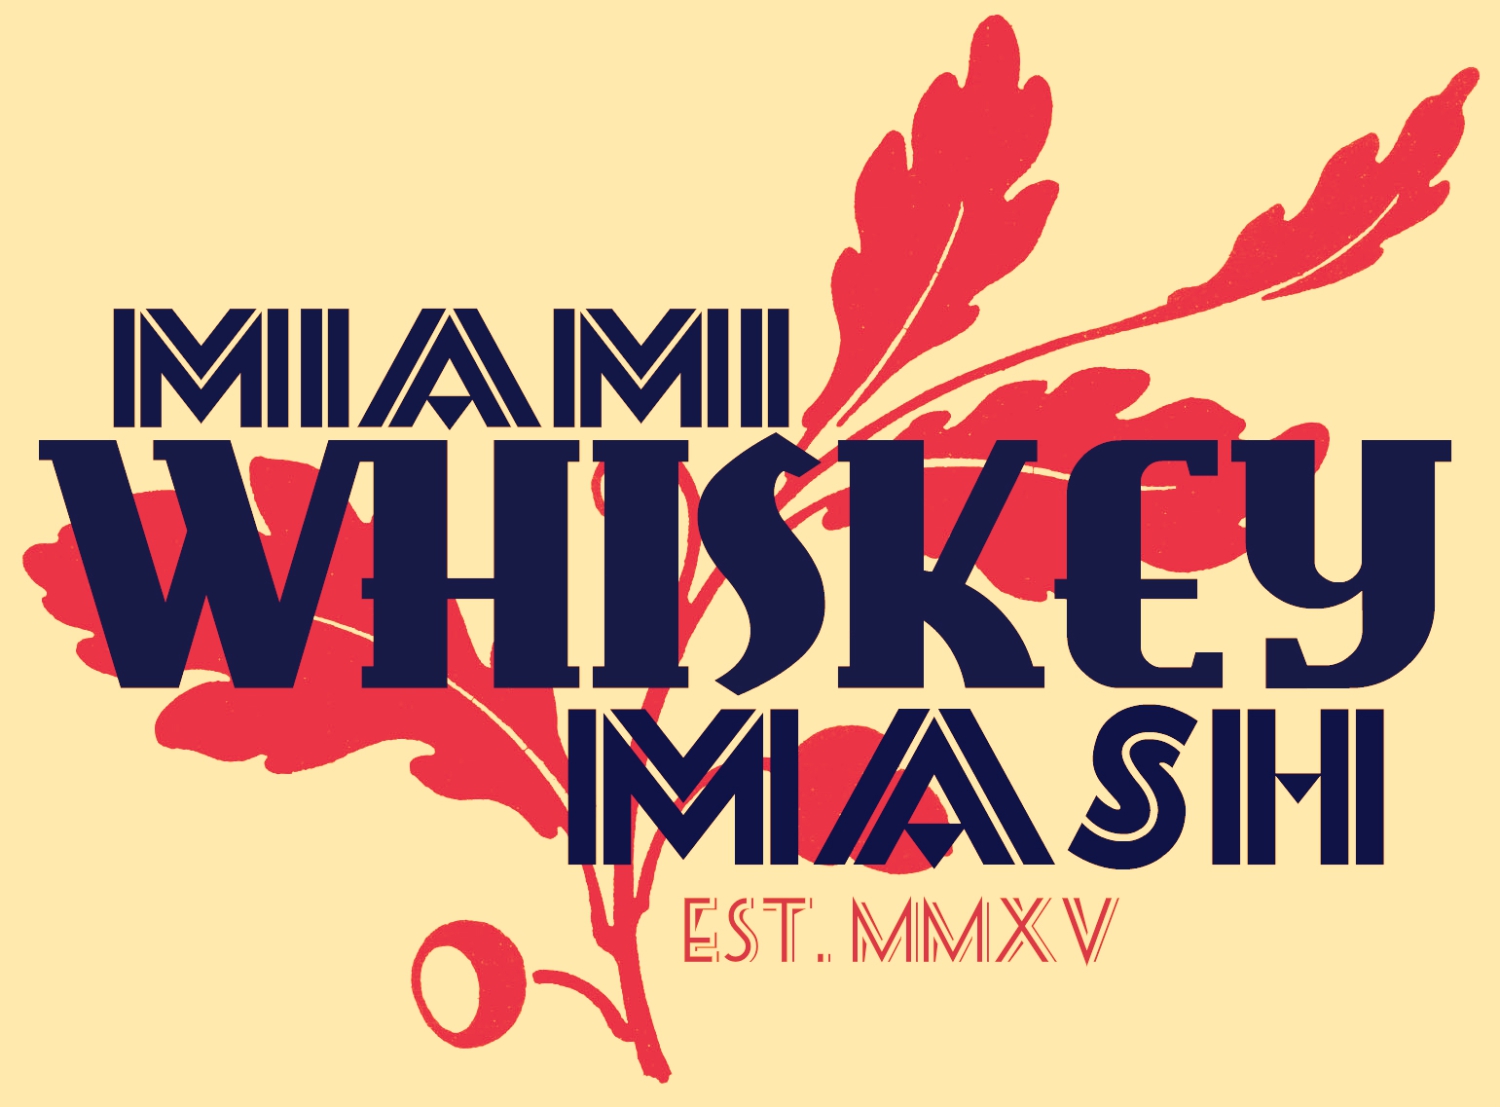 Miami Whisk(e)y Mash 2023